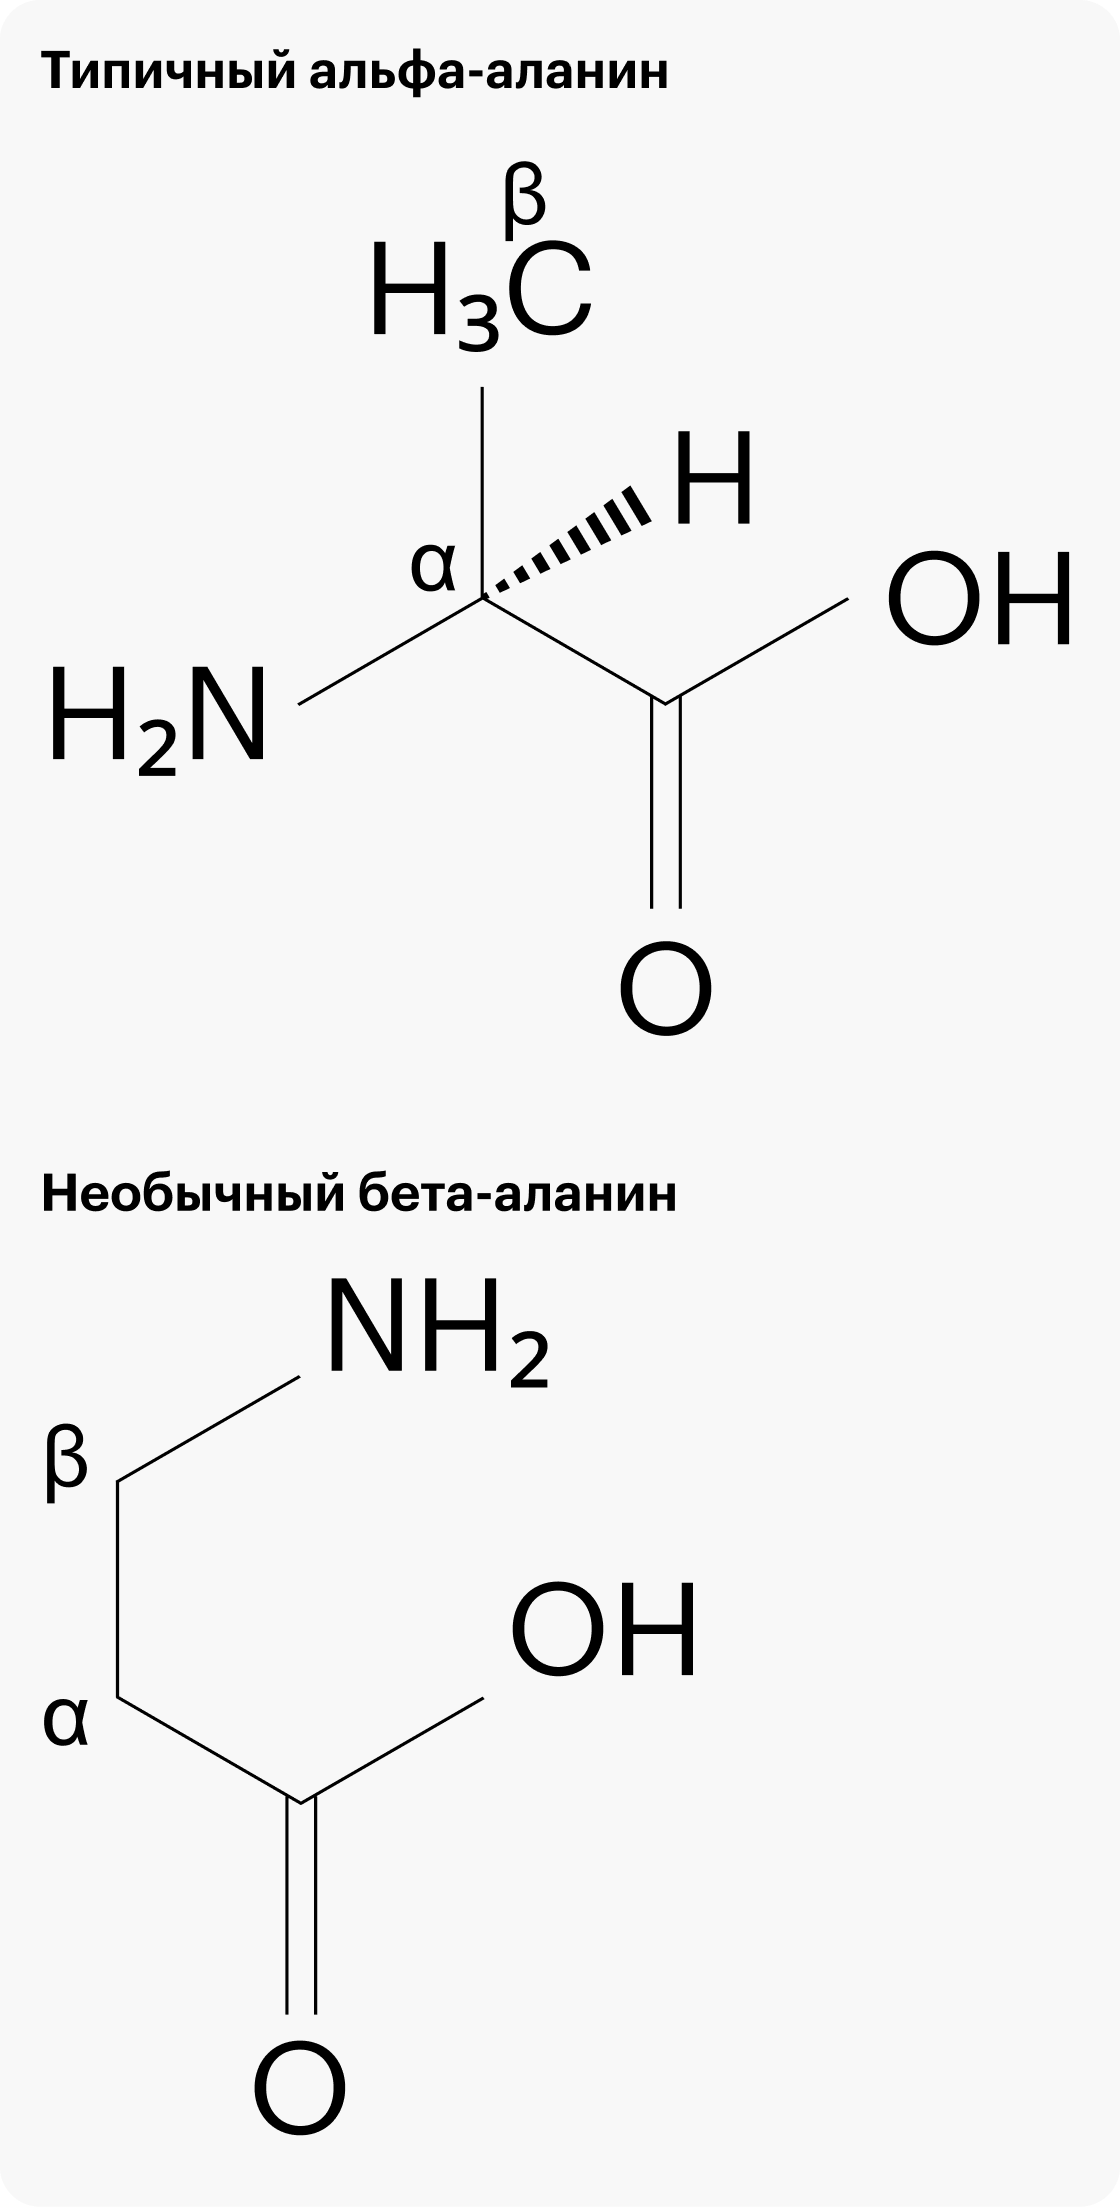 Слева: типичный альфа-аланин, у которого -NH2 прицеплен к альфа-углероду. Справа: необычный бета-аланин, у которого -NH2 прицеплен к бета-углероду